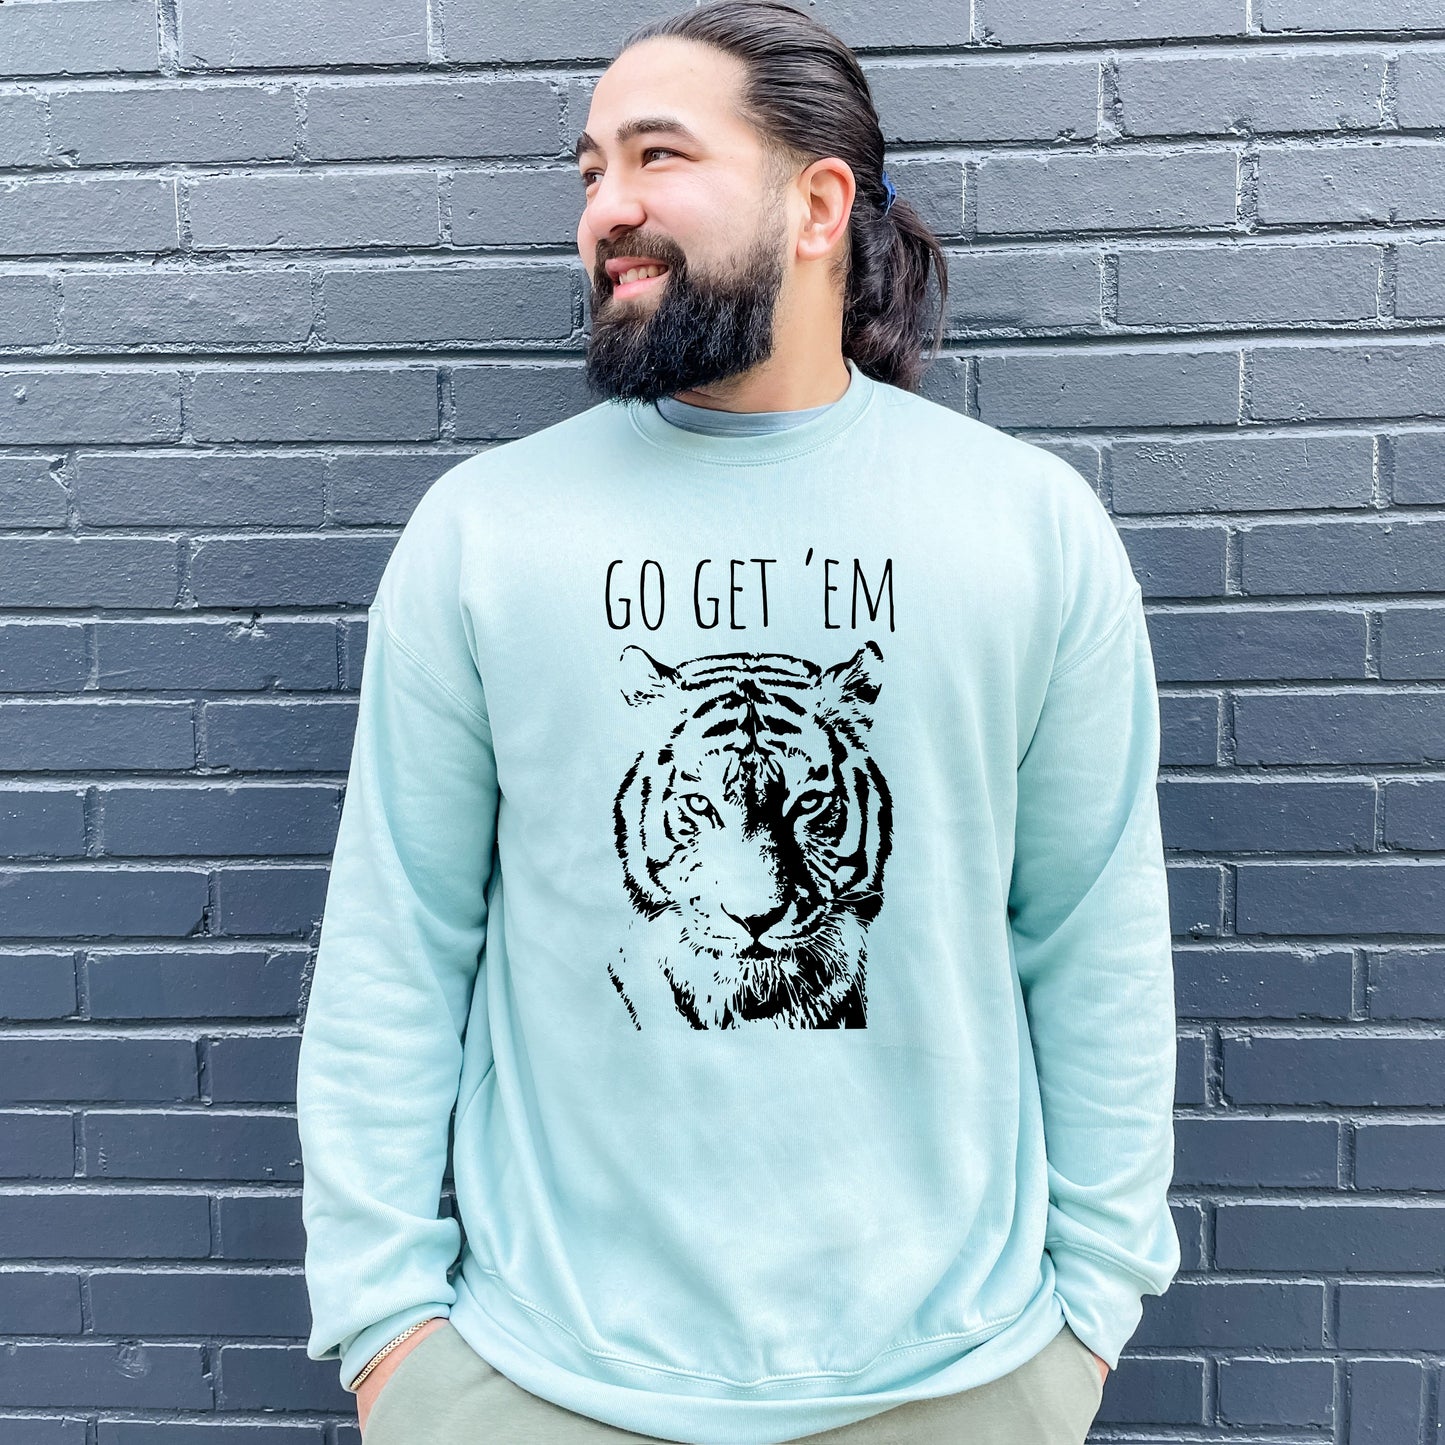 Go Get 'Em (Tiger) - Unisex Sweatshirt - Heather Gray or Dusty Blue